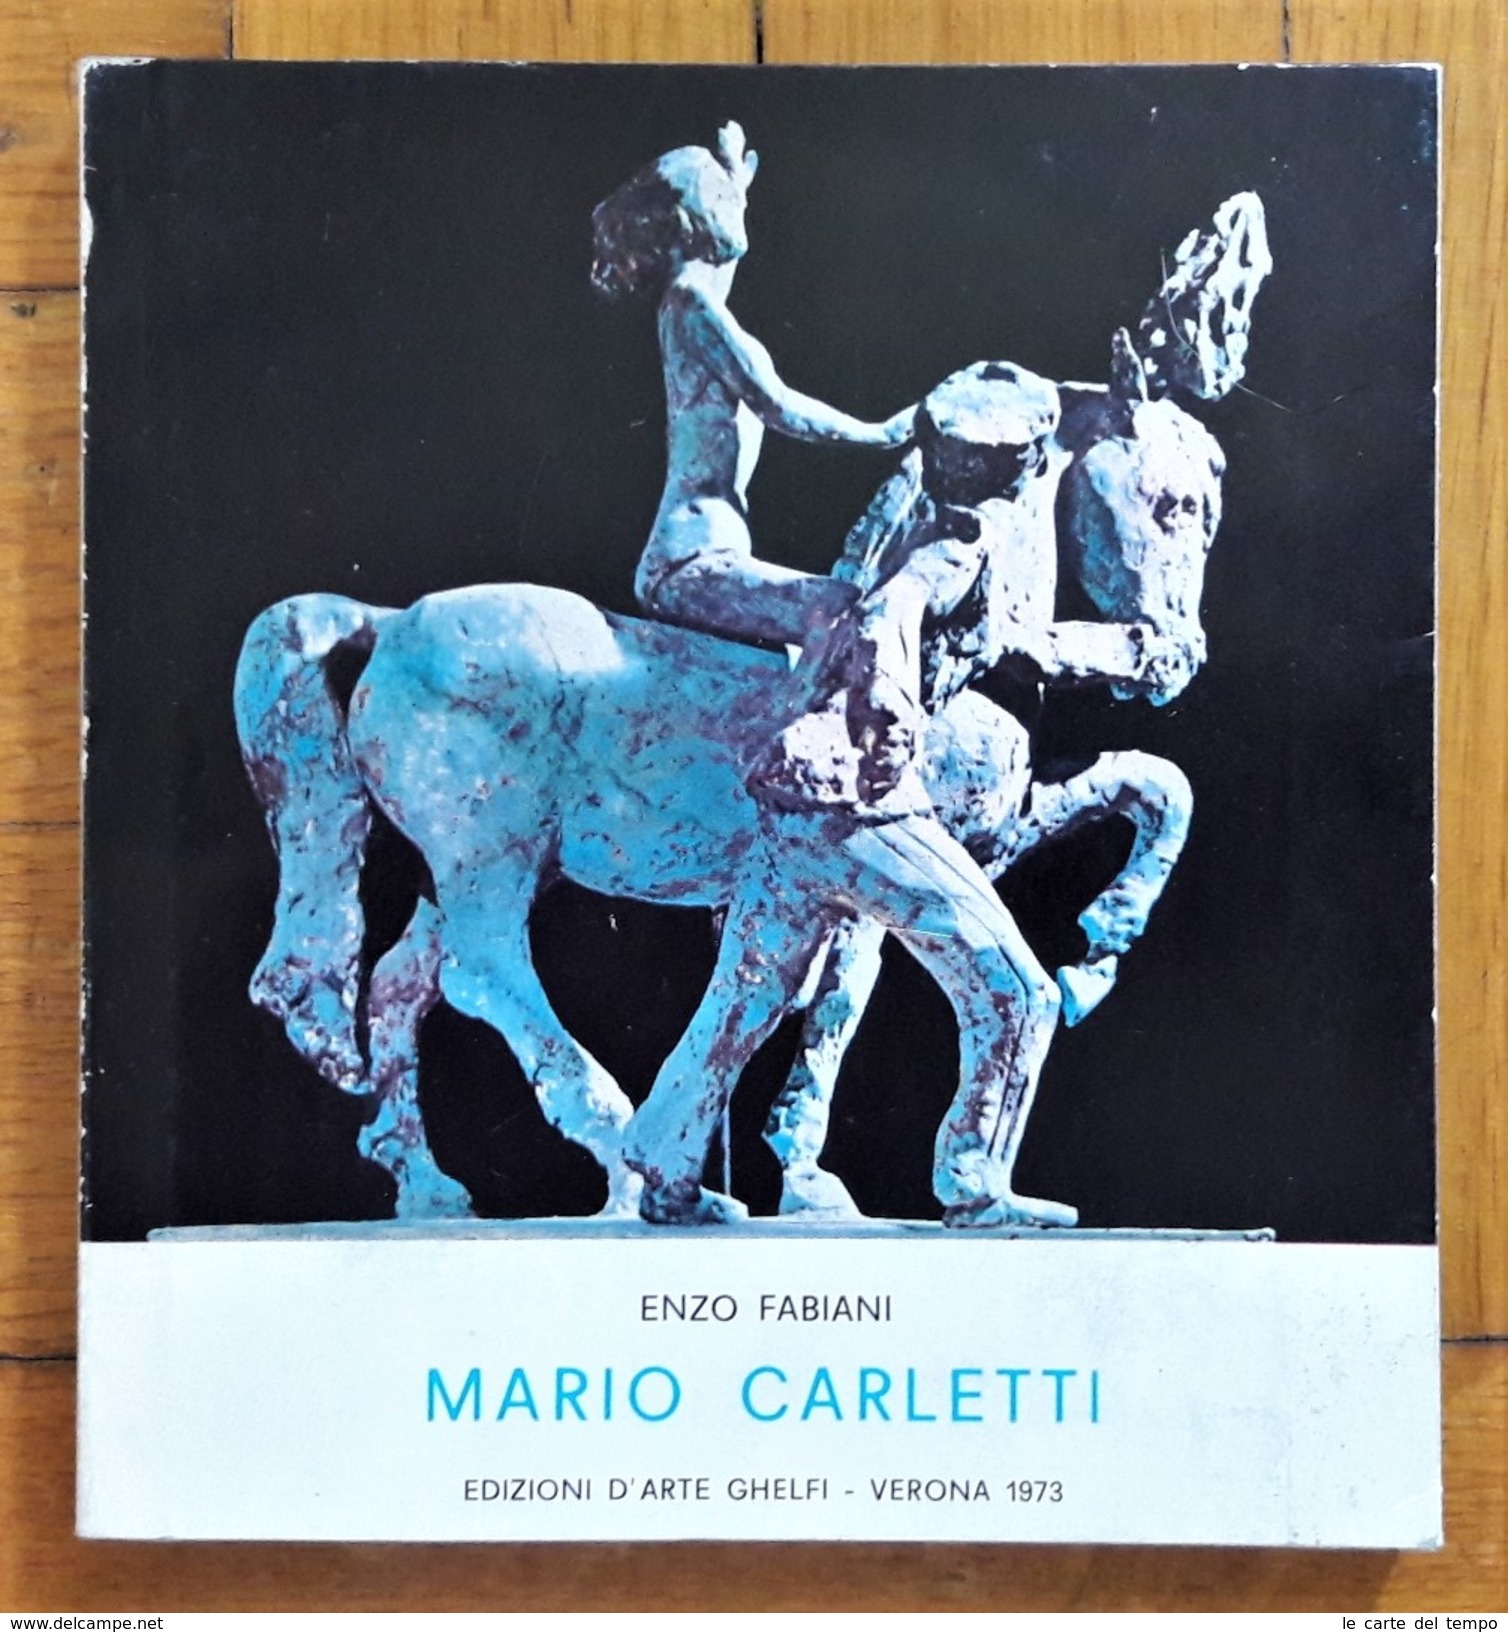 Catalogo Enzo Fabiani - MARIO CARLETTI "Il Circo". 1973 - Arte, Architettura